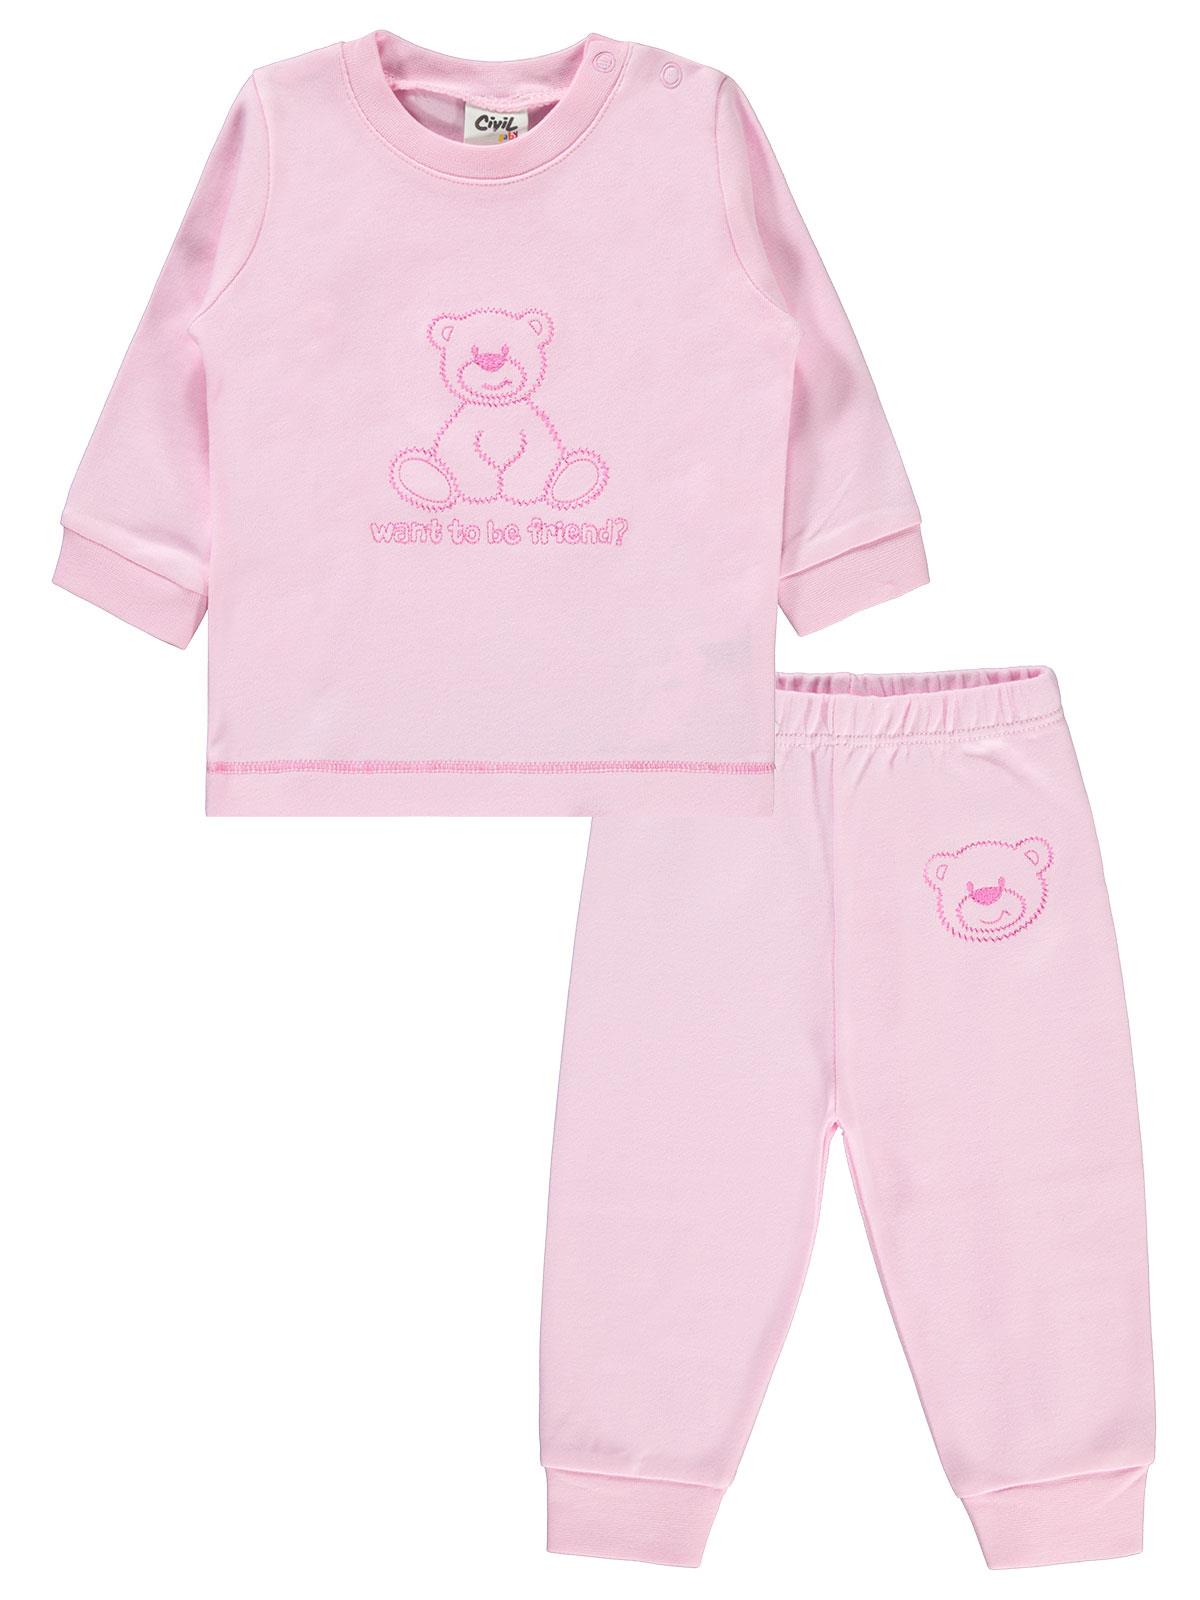 Civil Baby Bebek Pijama Takımı 3-18 Ay Pembe